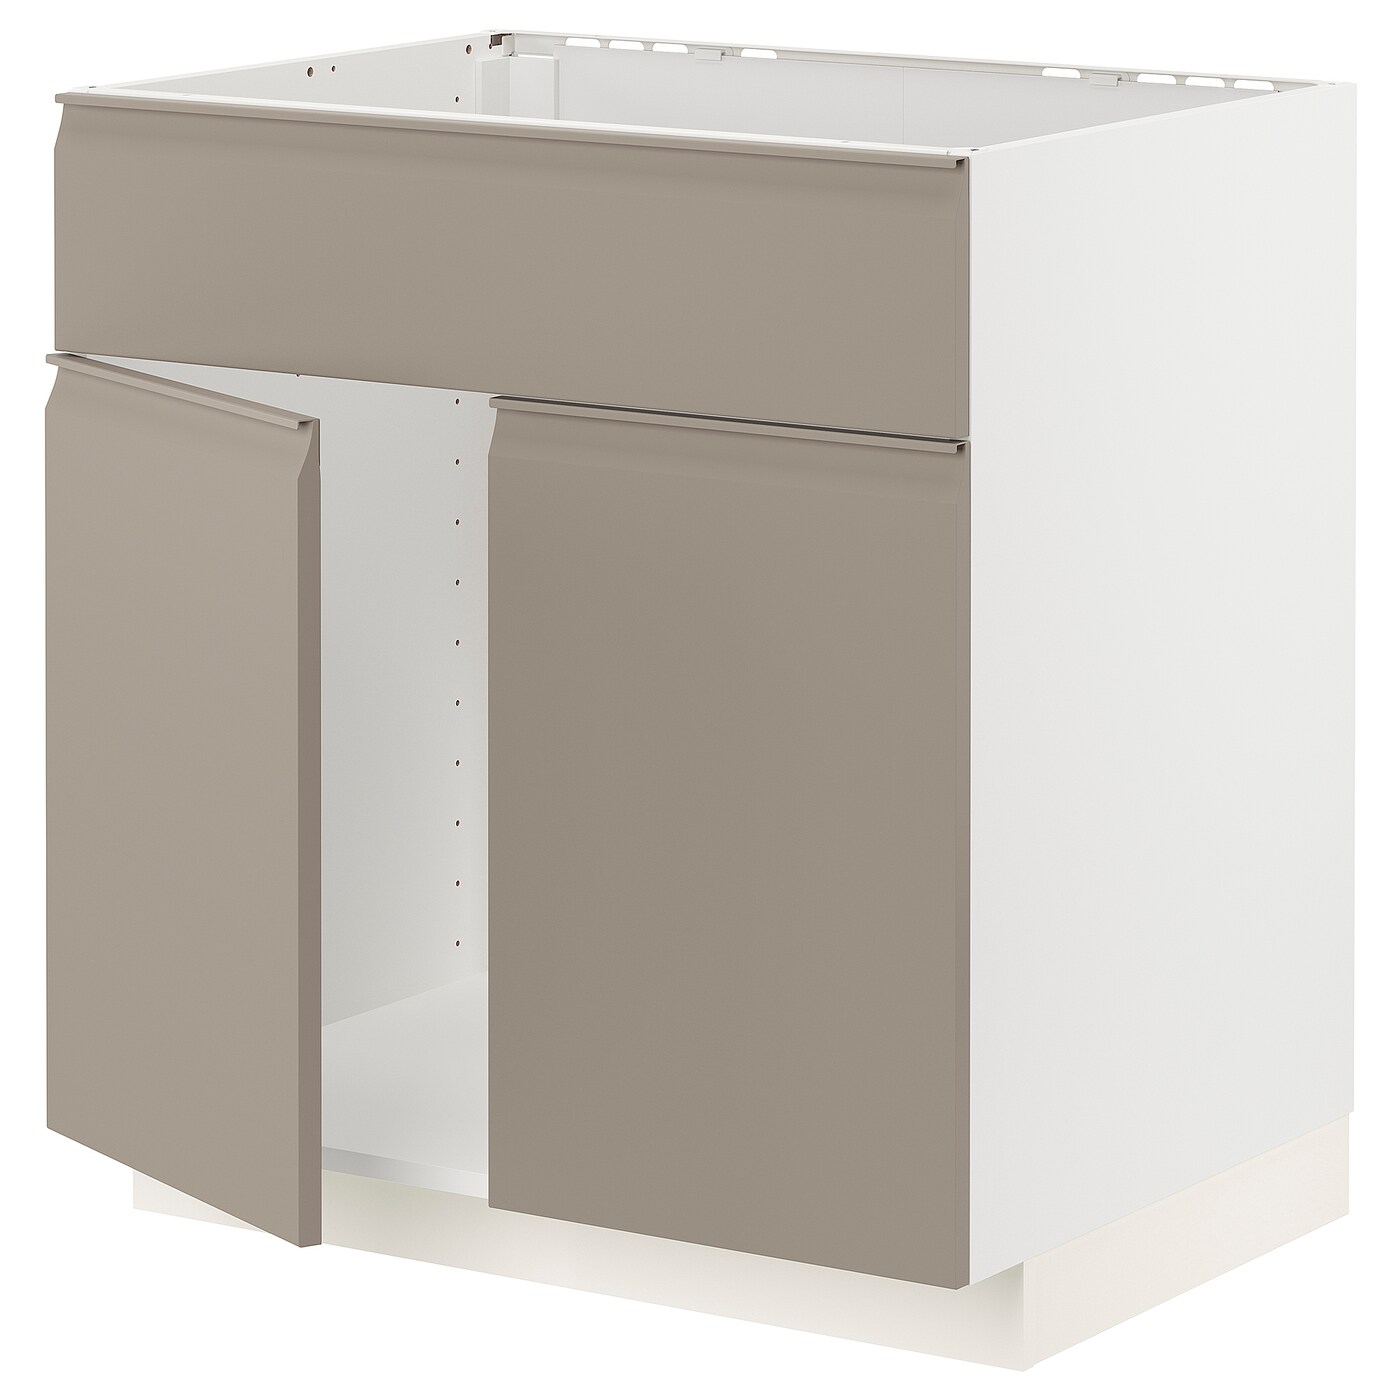 Напольный кухонный шкаф  - IKEA METOD, 88x62x80см, белый/темно-бежевый, МЕТОД ИКЕА